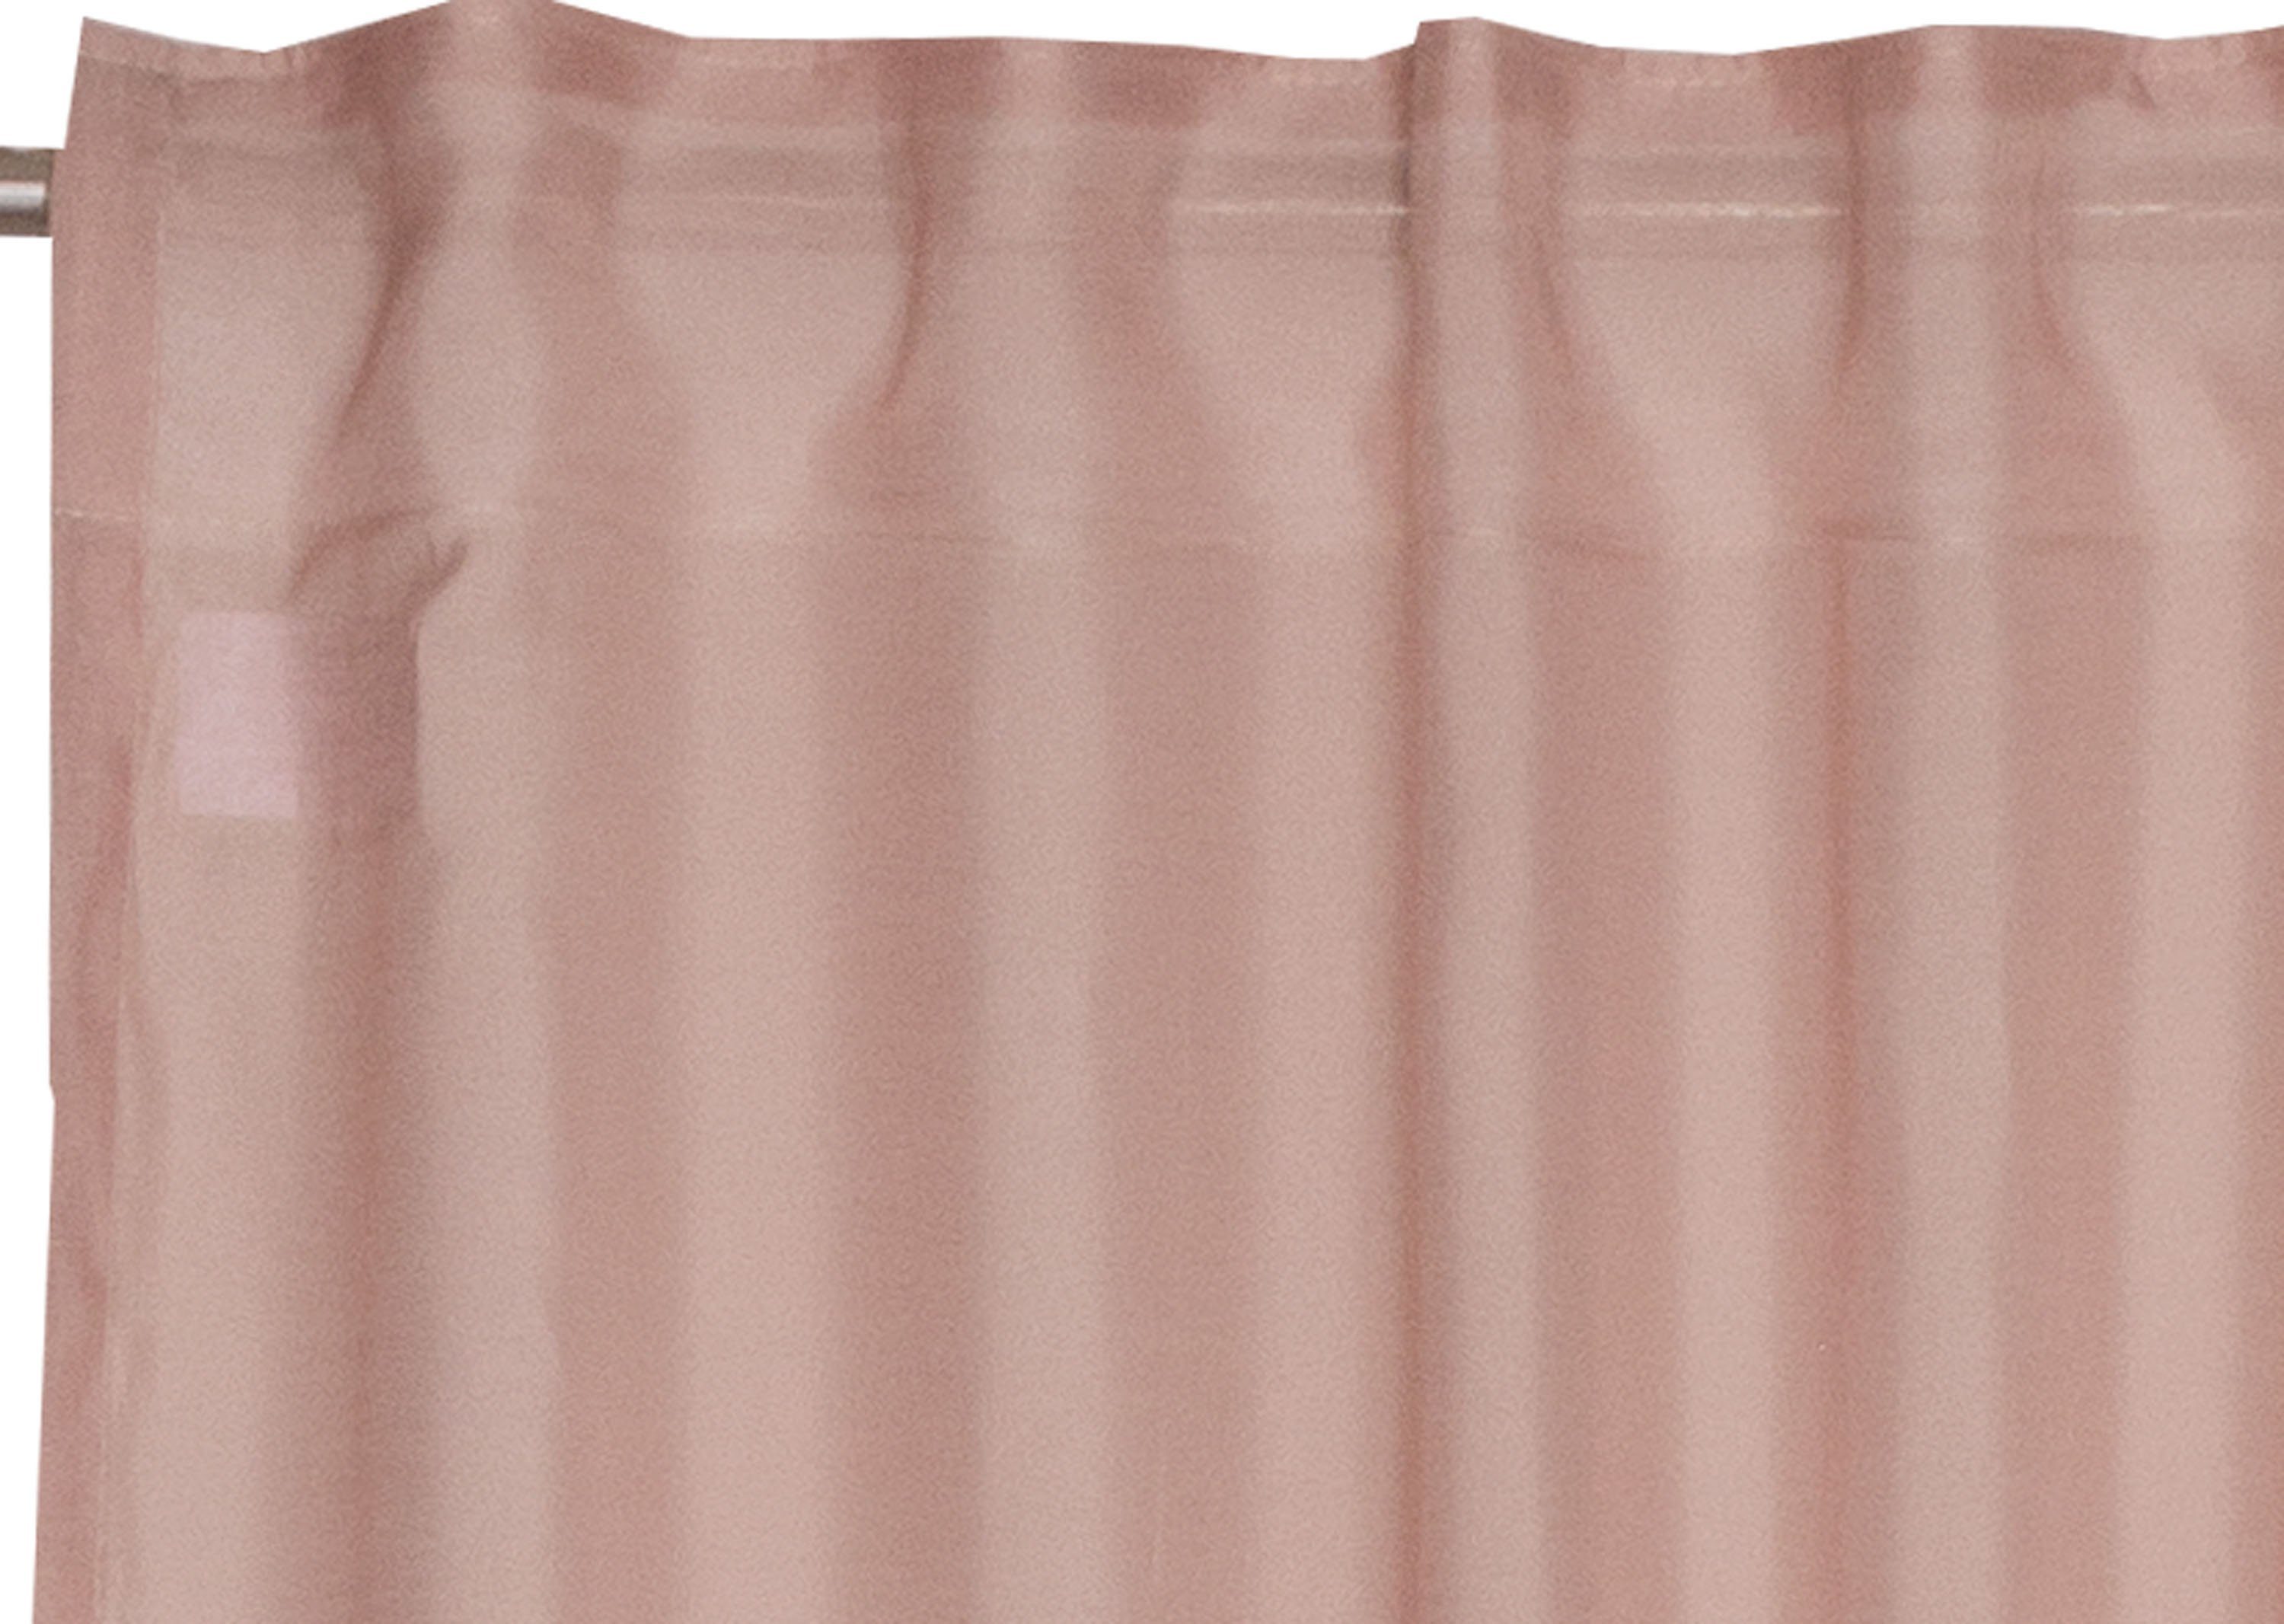 Vorhang Solid, SCHÖNER WOHNEN-Kollektion, Multifunktionsband zeilosen, Jacquard, im rosa/rosé (1 Look halbtransparent, unifarbenen St)